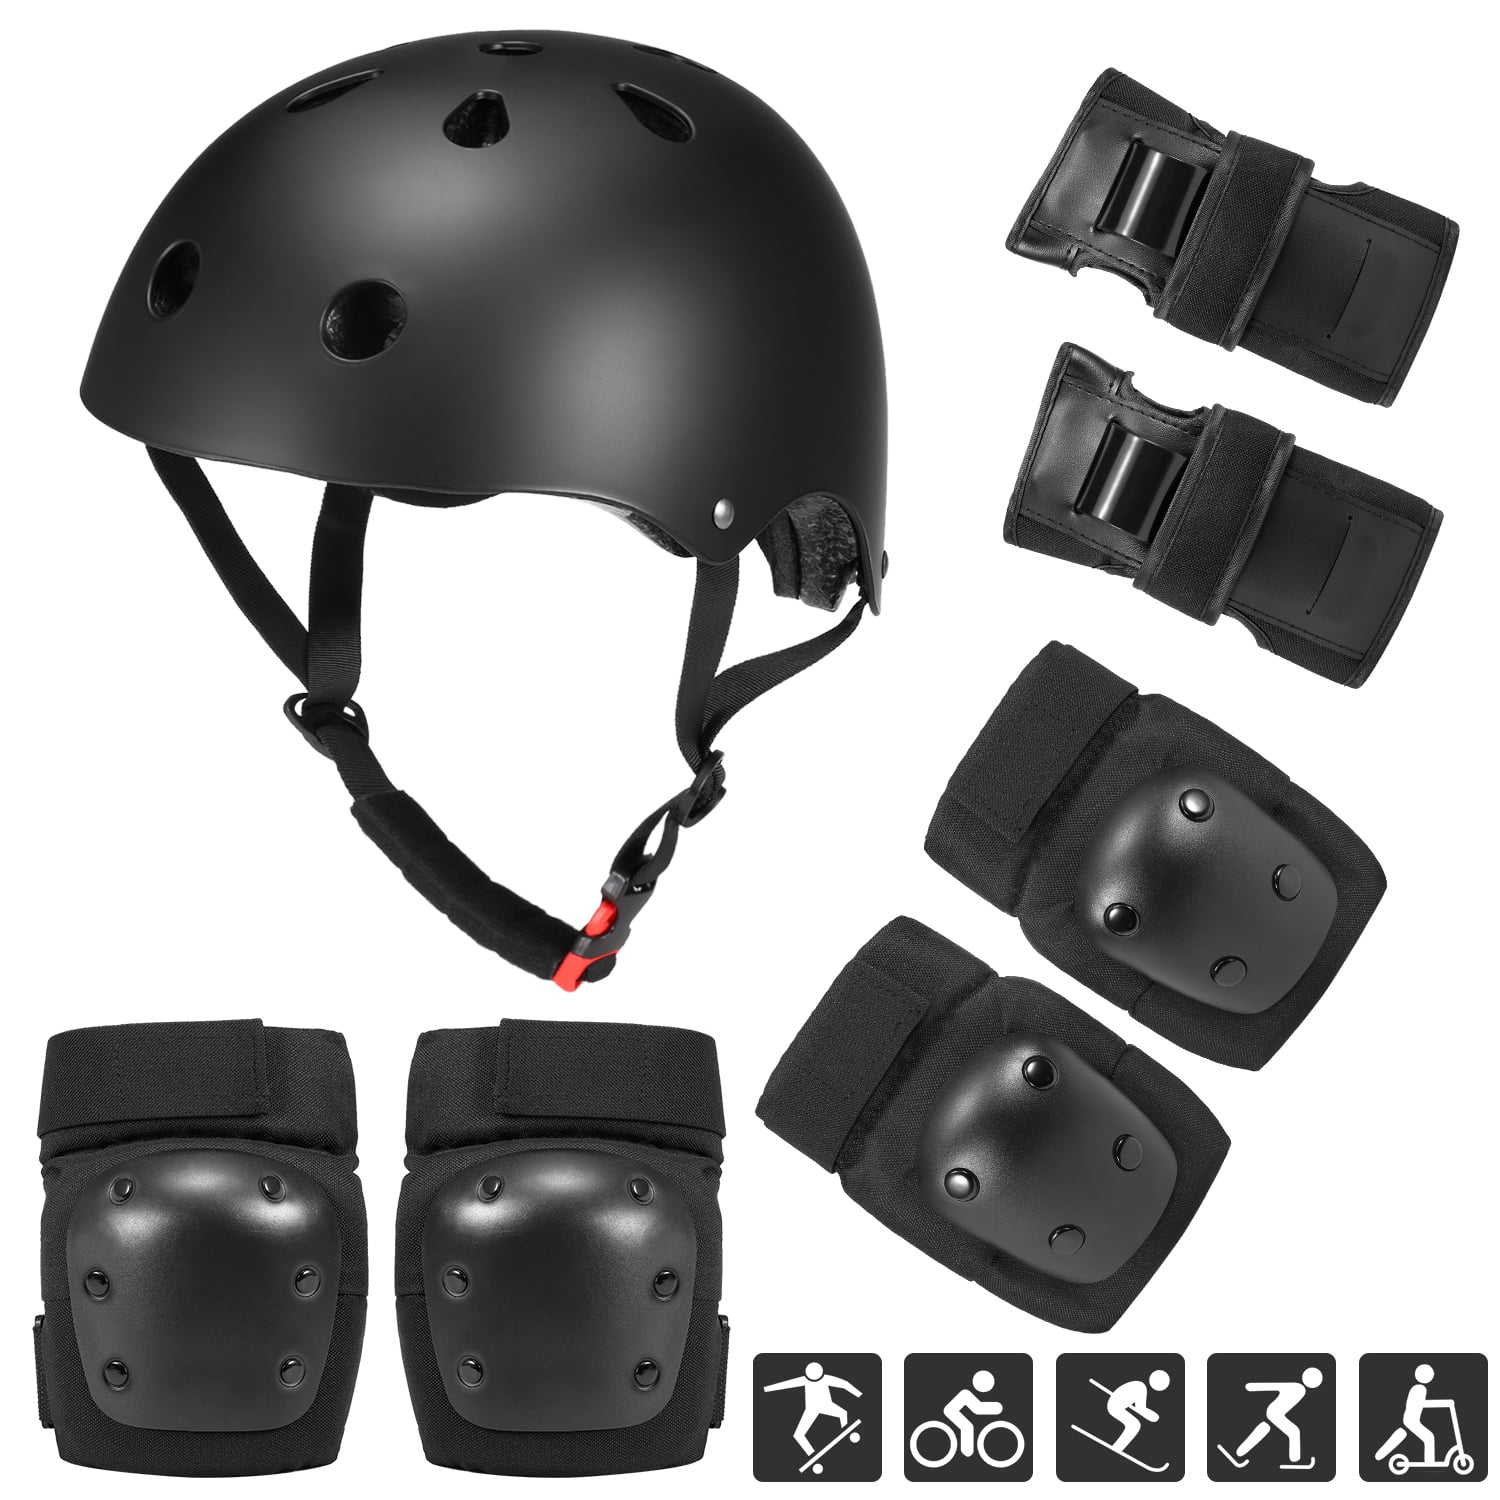 Kids Protective Gear Set 7 in 1 Adjustable Bike Helmets for Roller Skating 